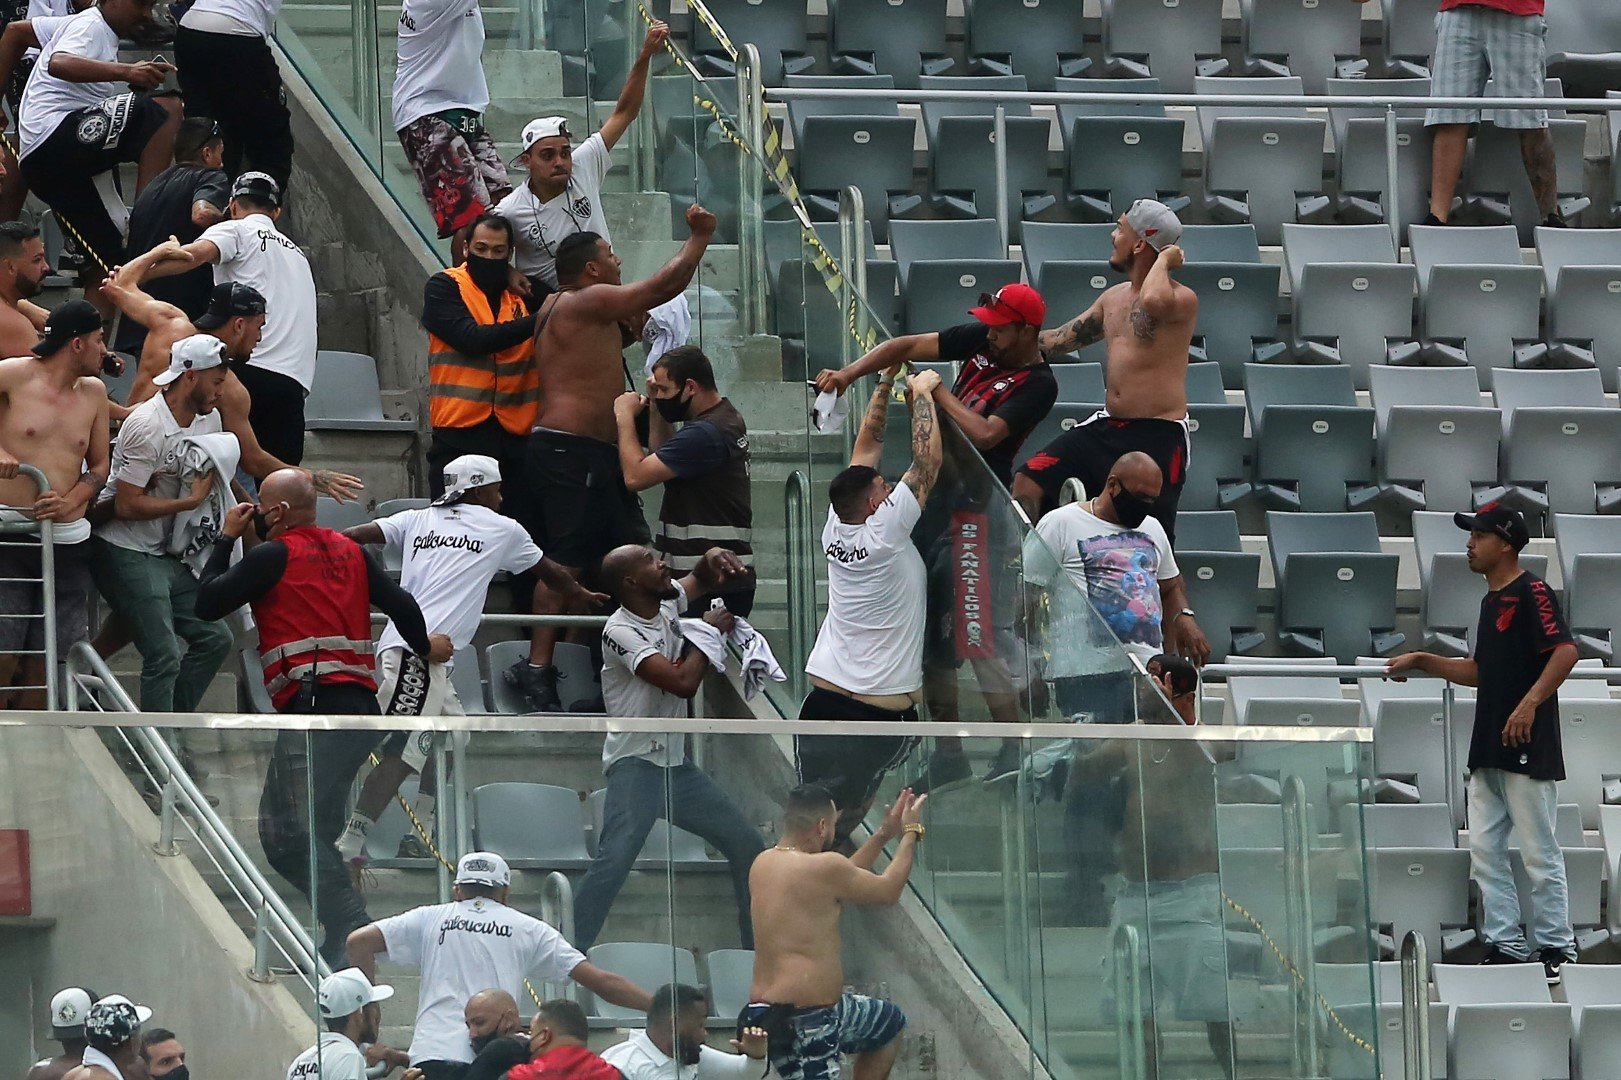 Пореден сблъсък на трибуните през 2014-а, преди забраната за гостуващи фенове в Сао Пауло